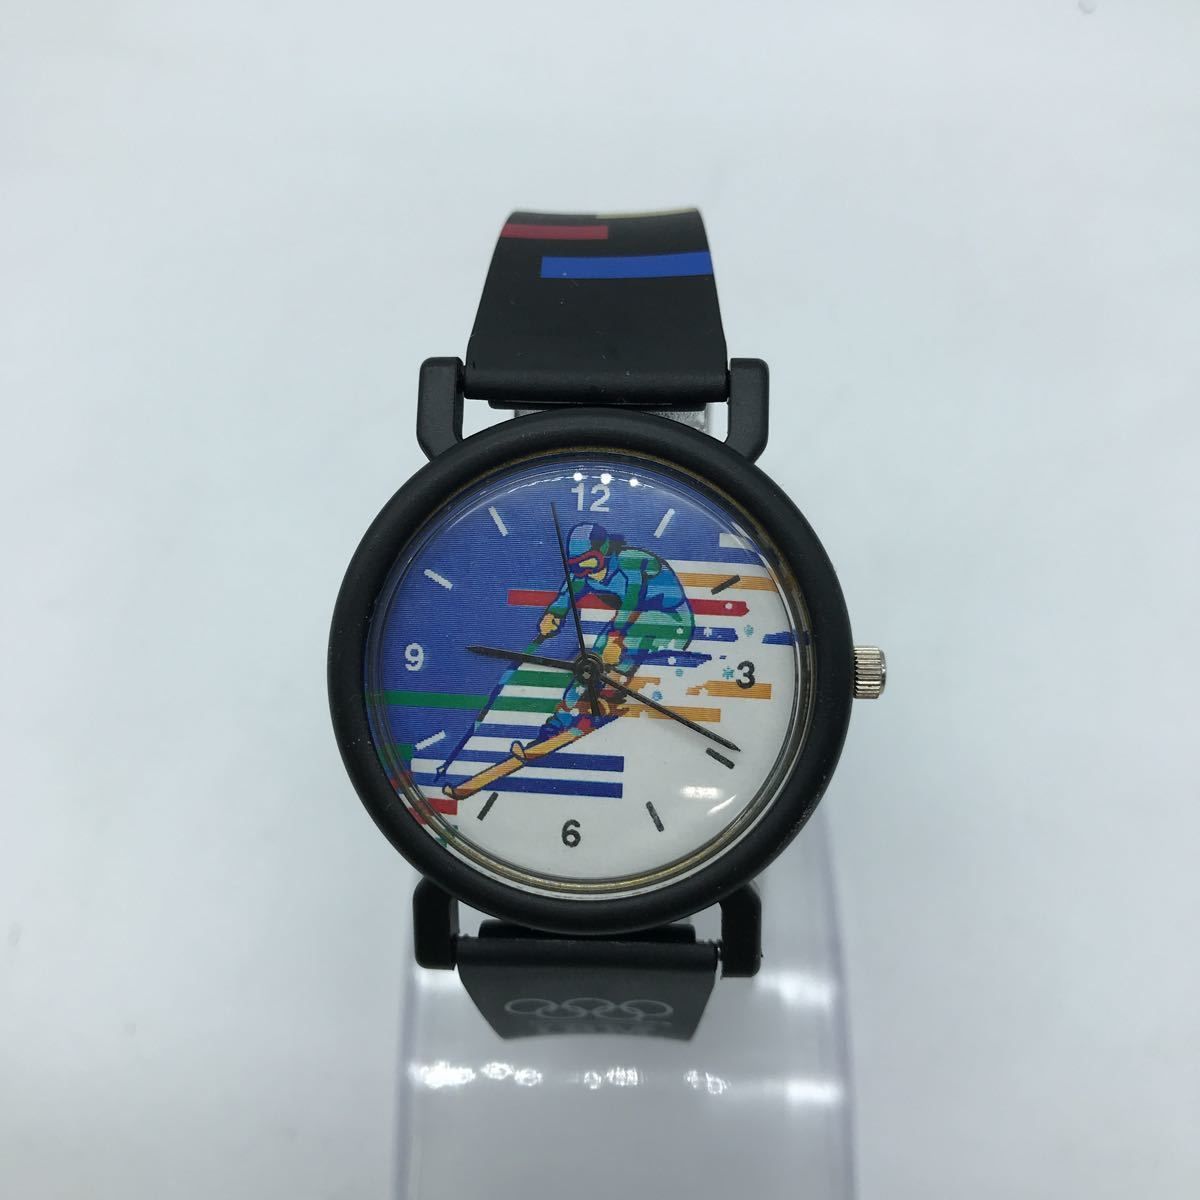 1998 Nagano Olympics IBM Watch クオーツ 腕時計 長野五輪